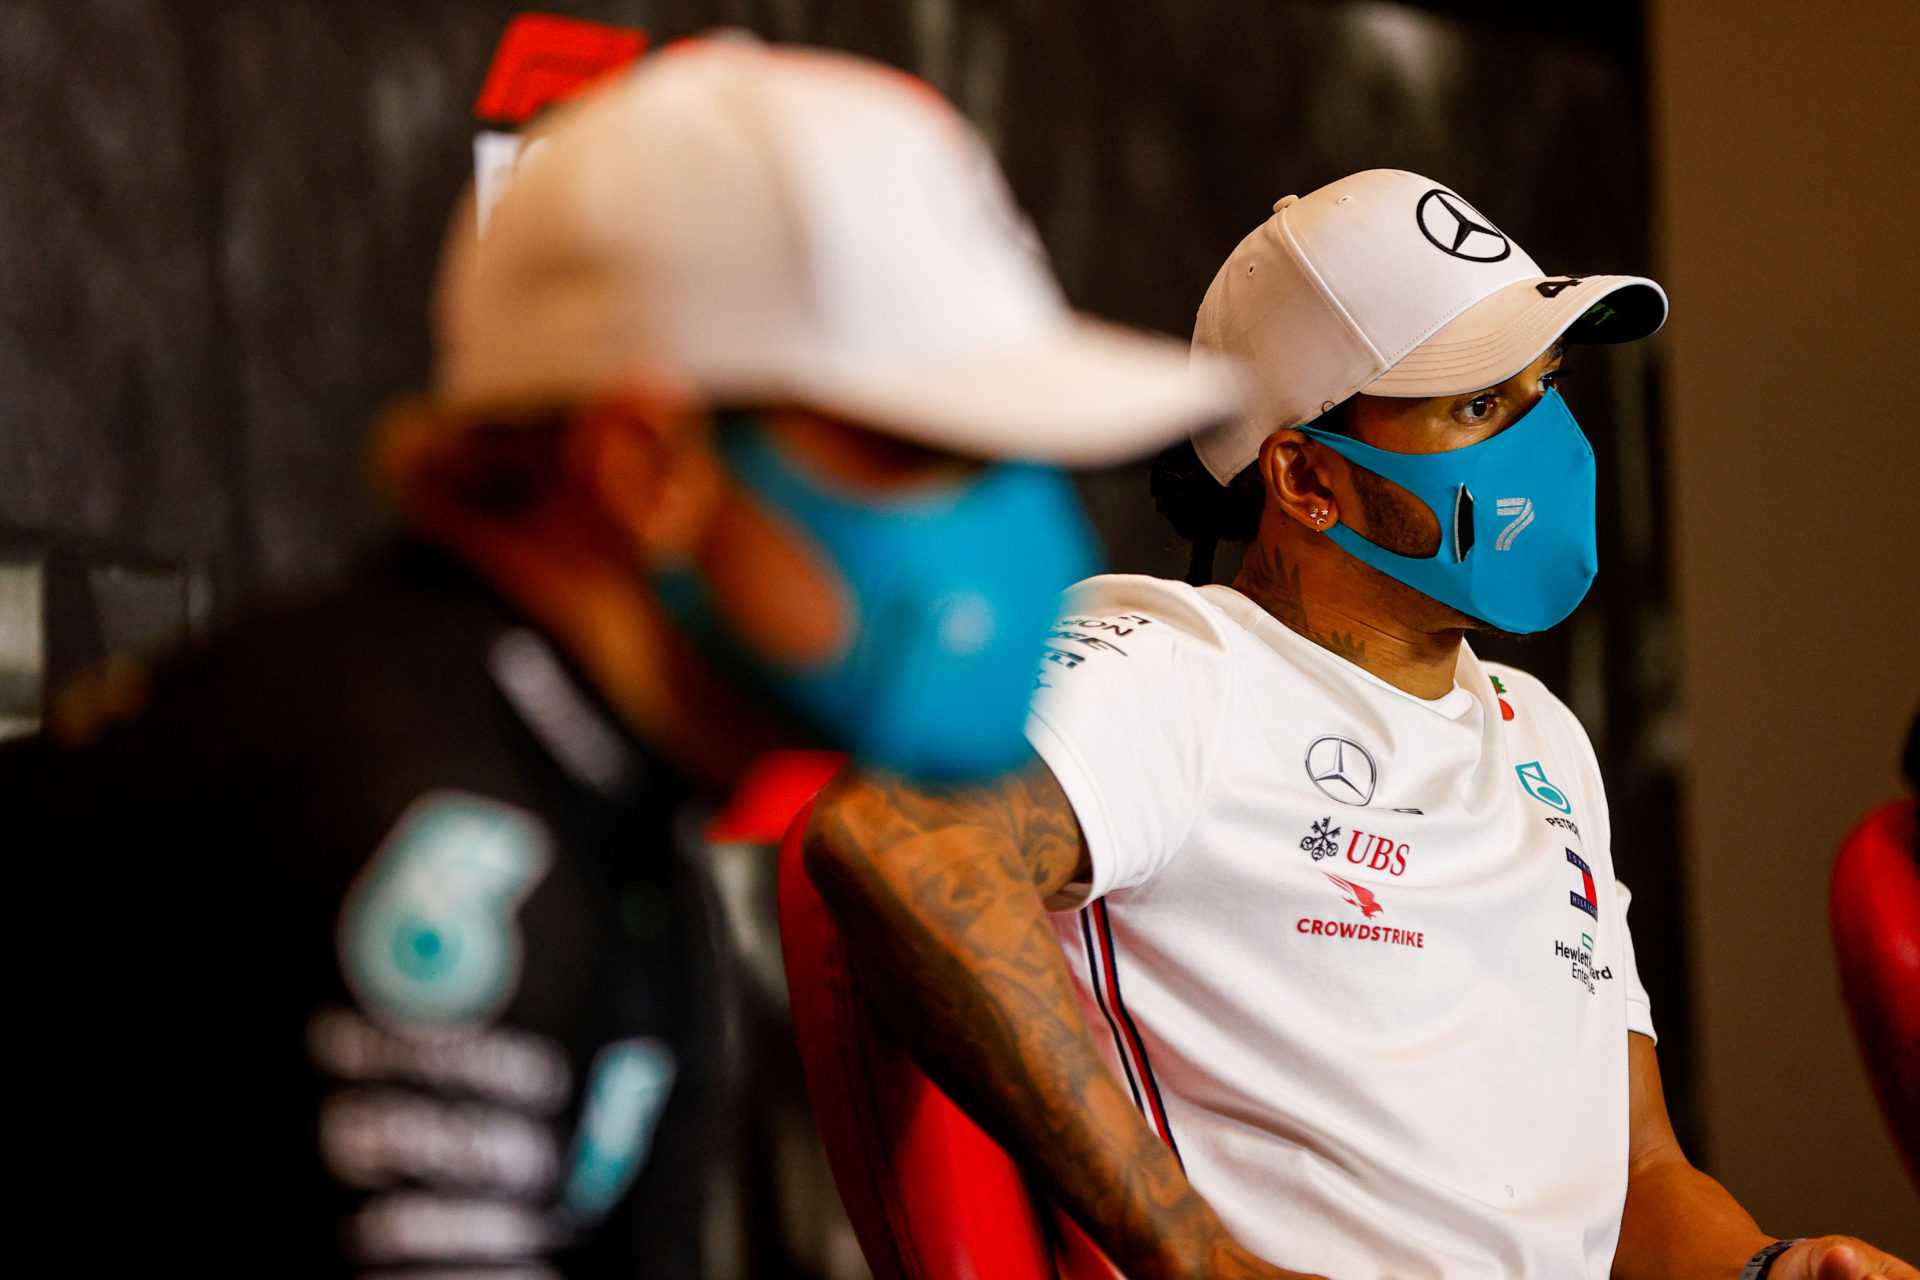 Lewis Hamilton réagit à une vidéo amusante sur la misère du week-end de course de Bottas à la traîne